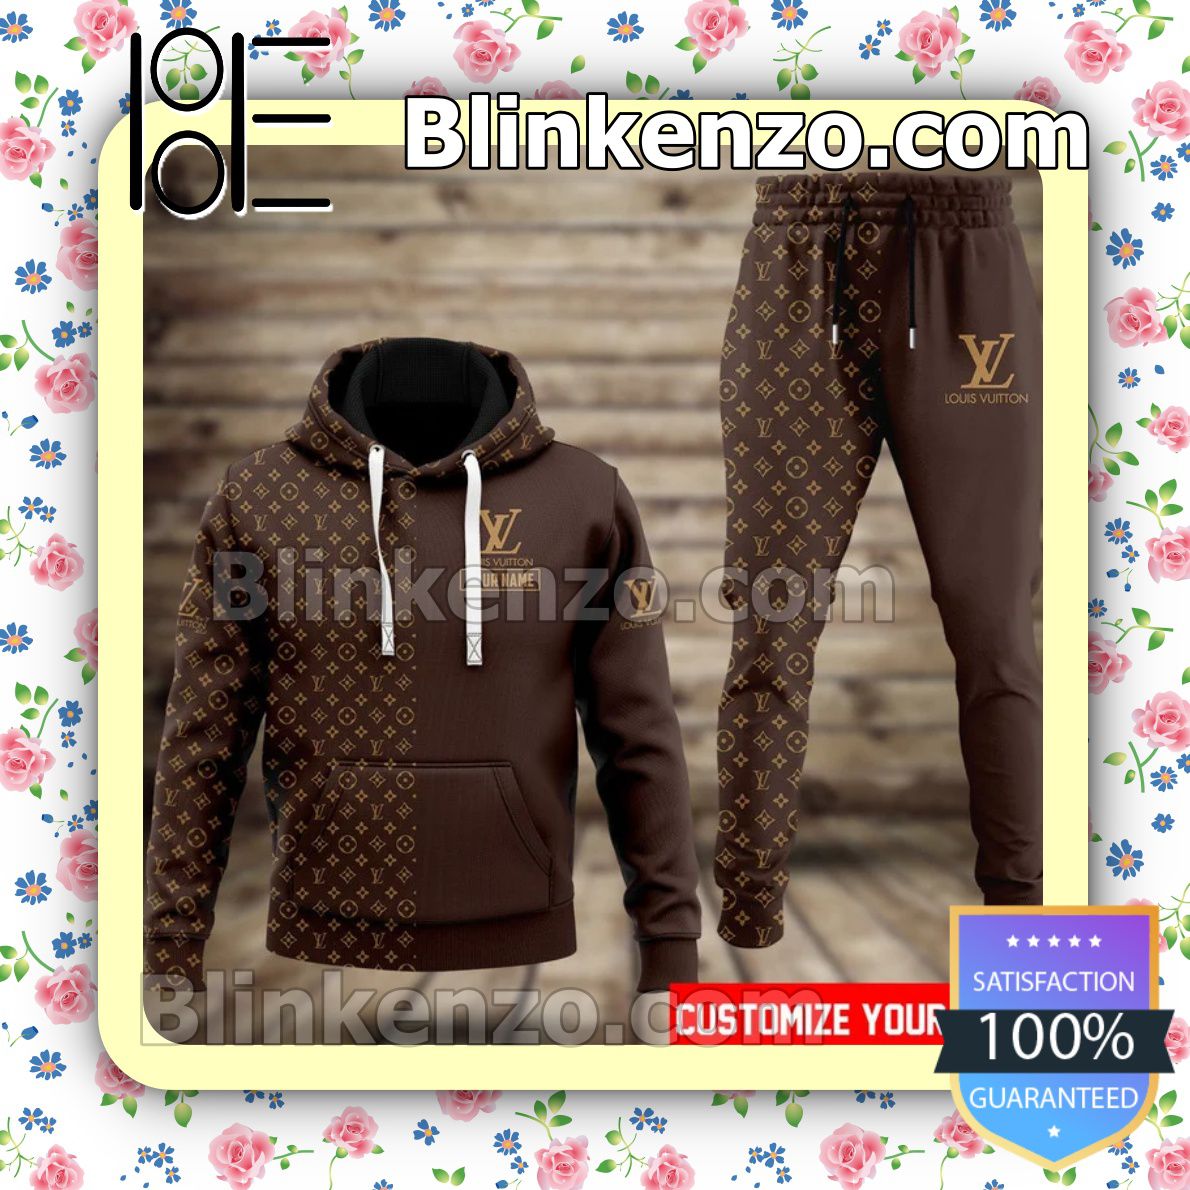 Personalized Half Monogram Dark Brown Fleece Hoodie, Pants